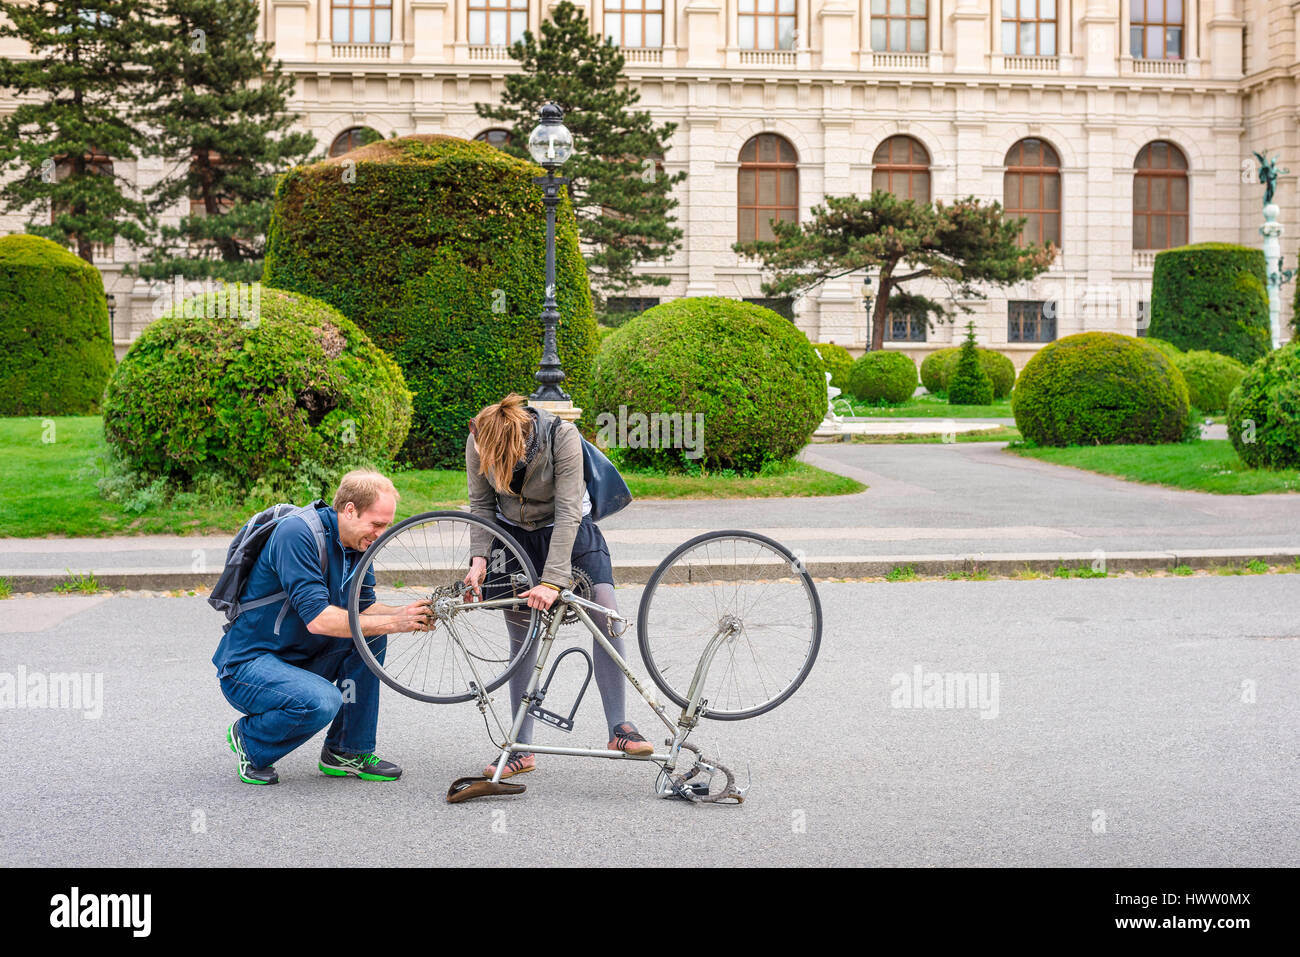 Helfende Hand, Blick auf einen jungen Mann und eine Frau, die zusammen an der Reparatur eines Fahrrads in Maria Theresienplatz, Wien, Österreich, arbeiten. Stockfoto